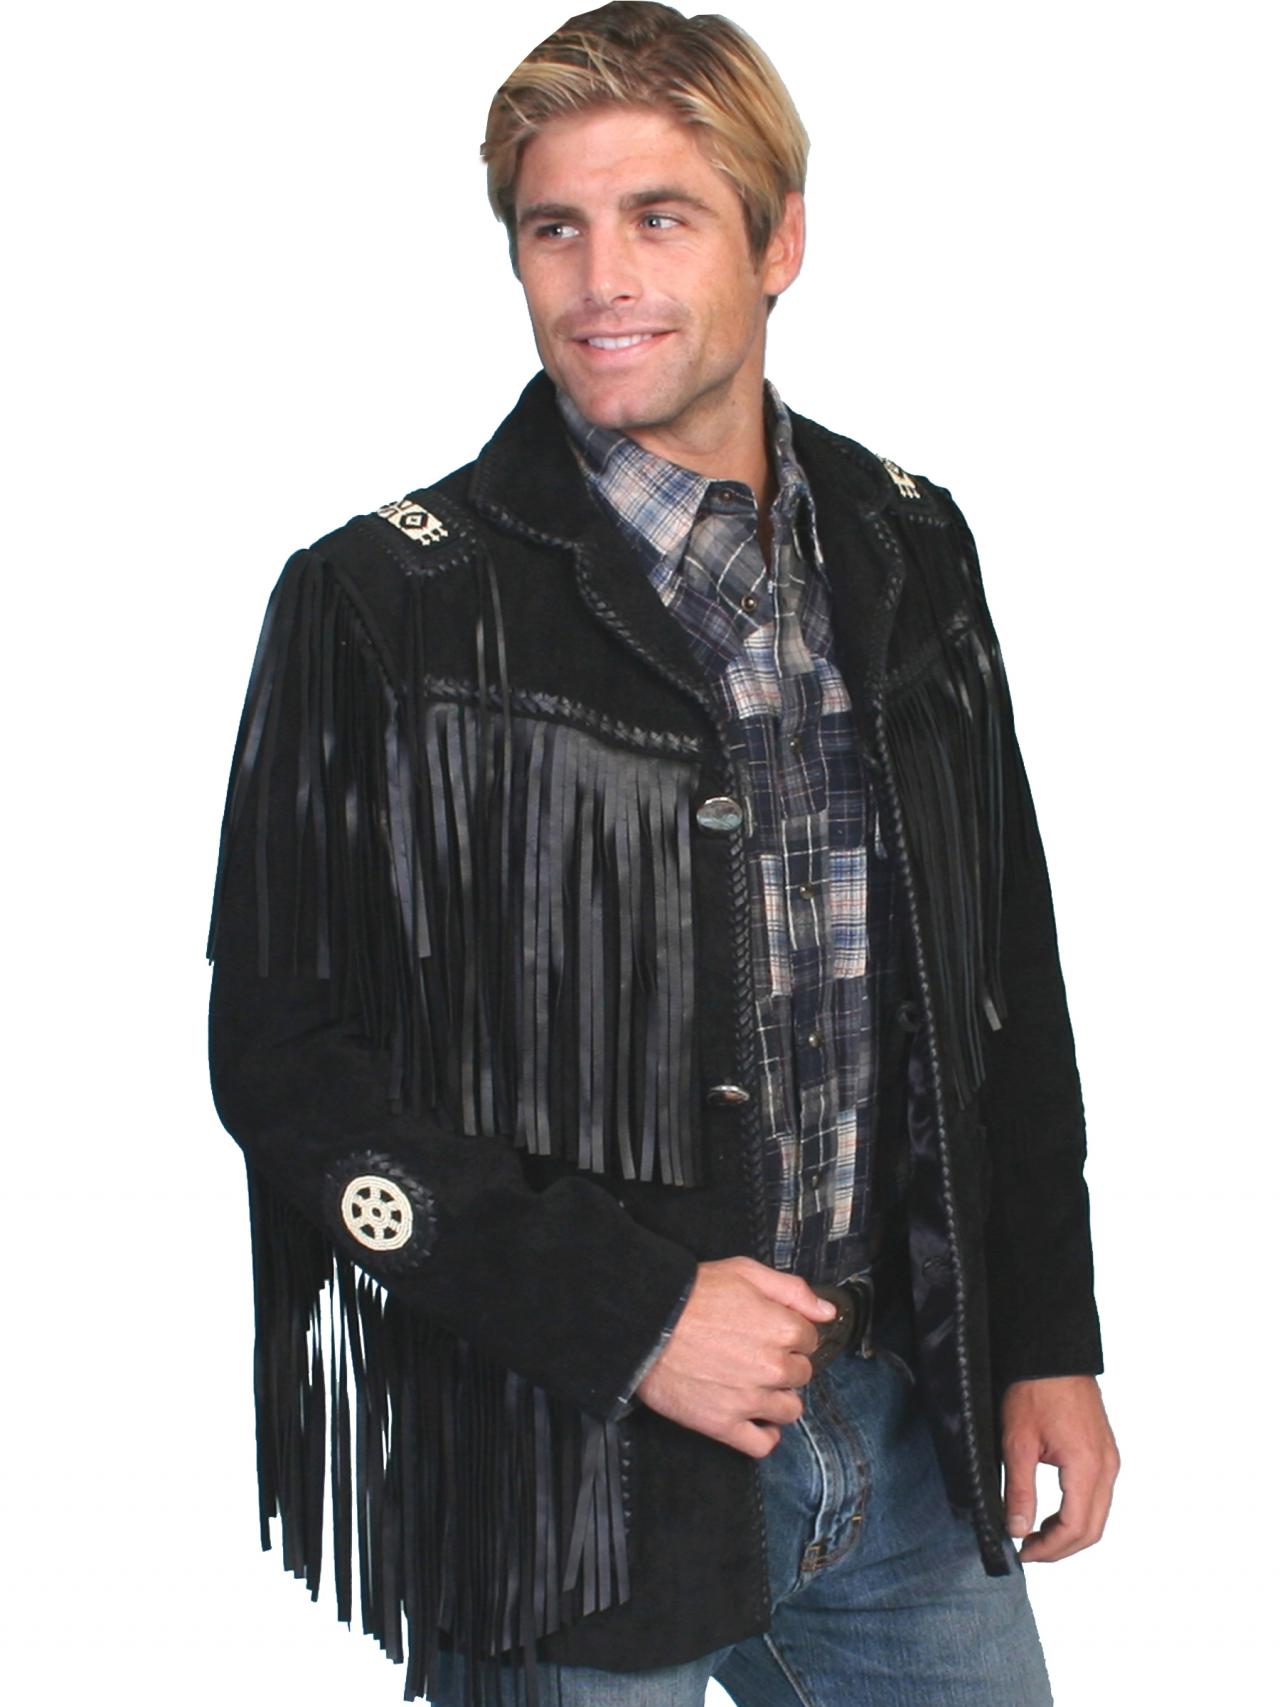 western leather jackets with fringe